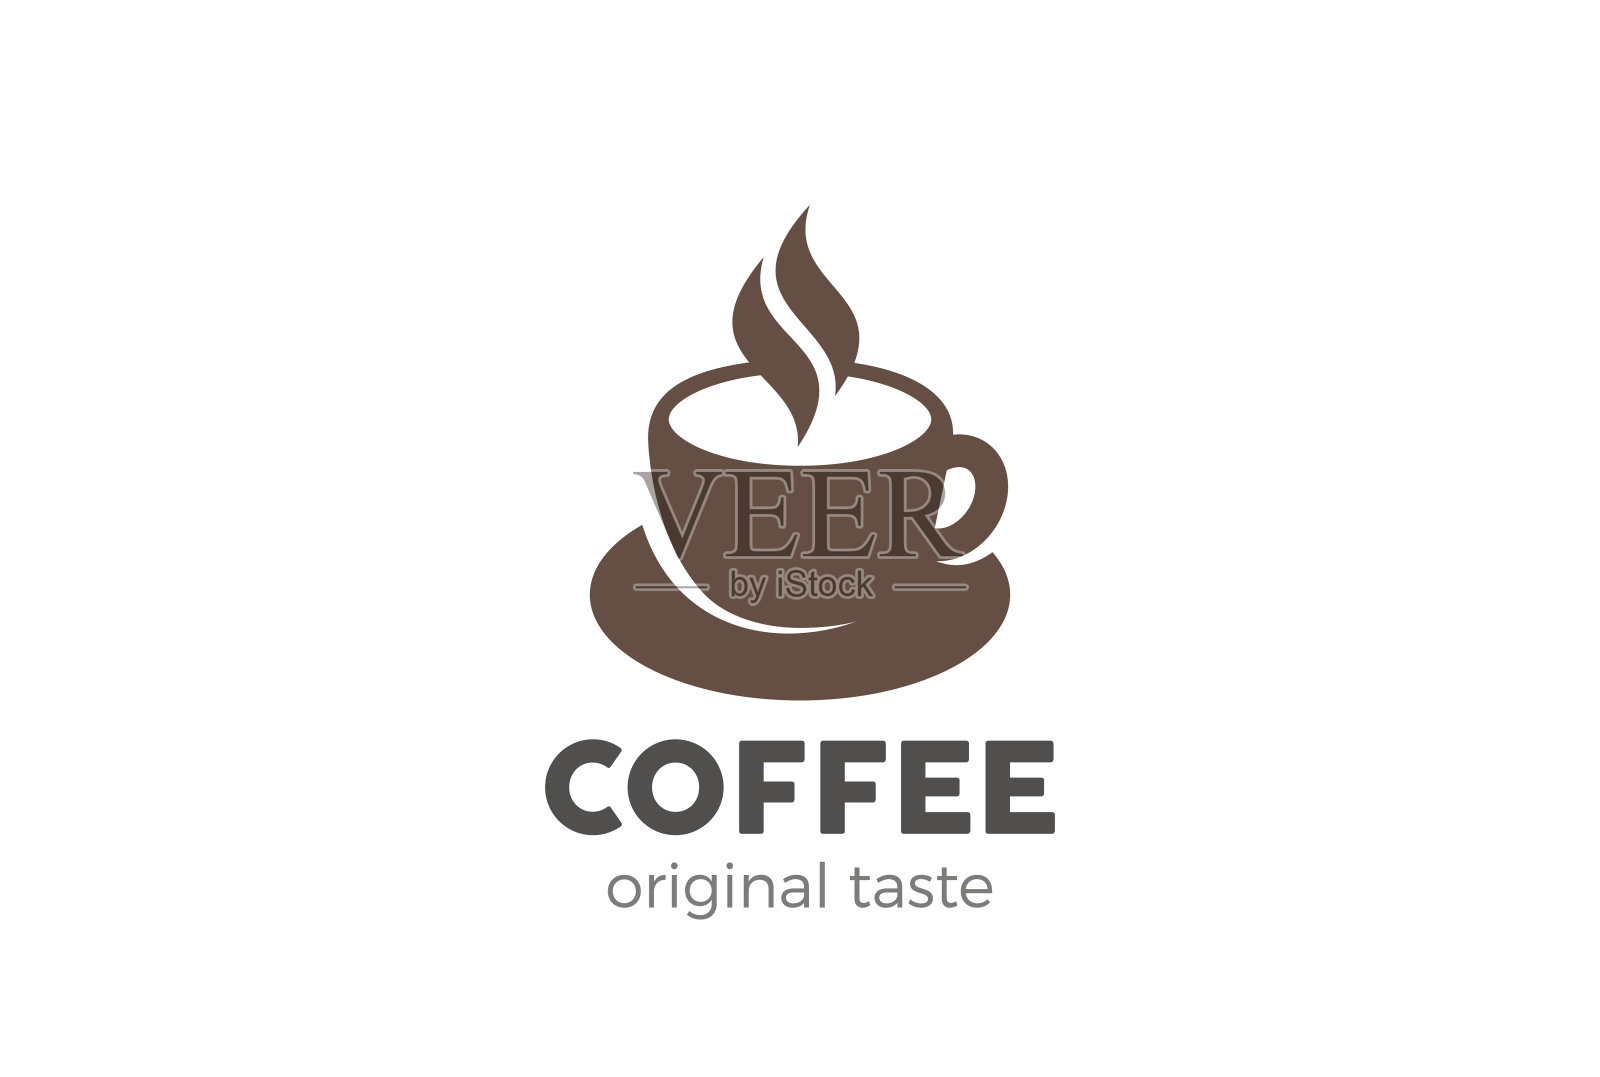 咖啡杯图标设计矢量模板。
咖啡馆符号图标插画图片素材